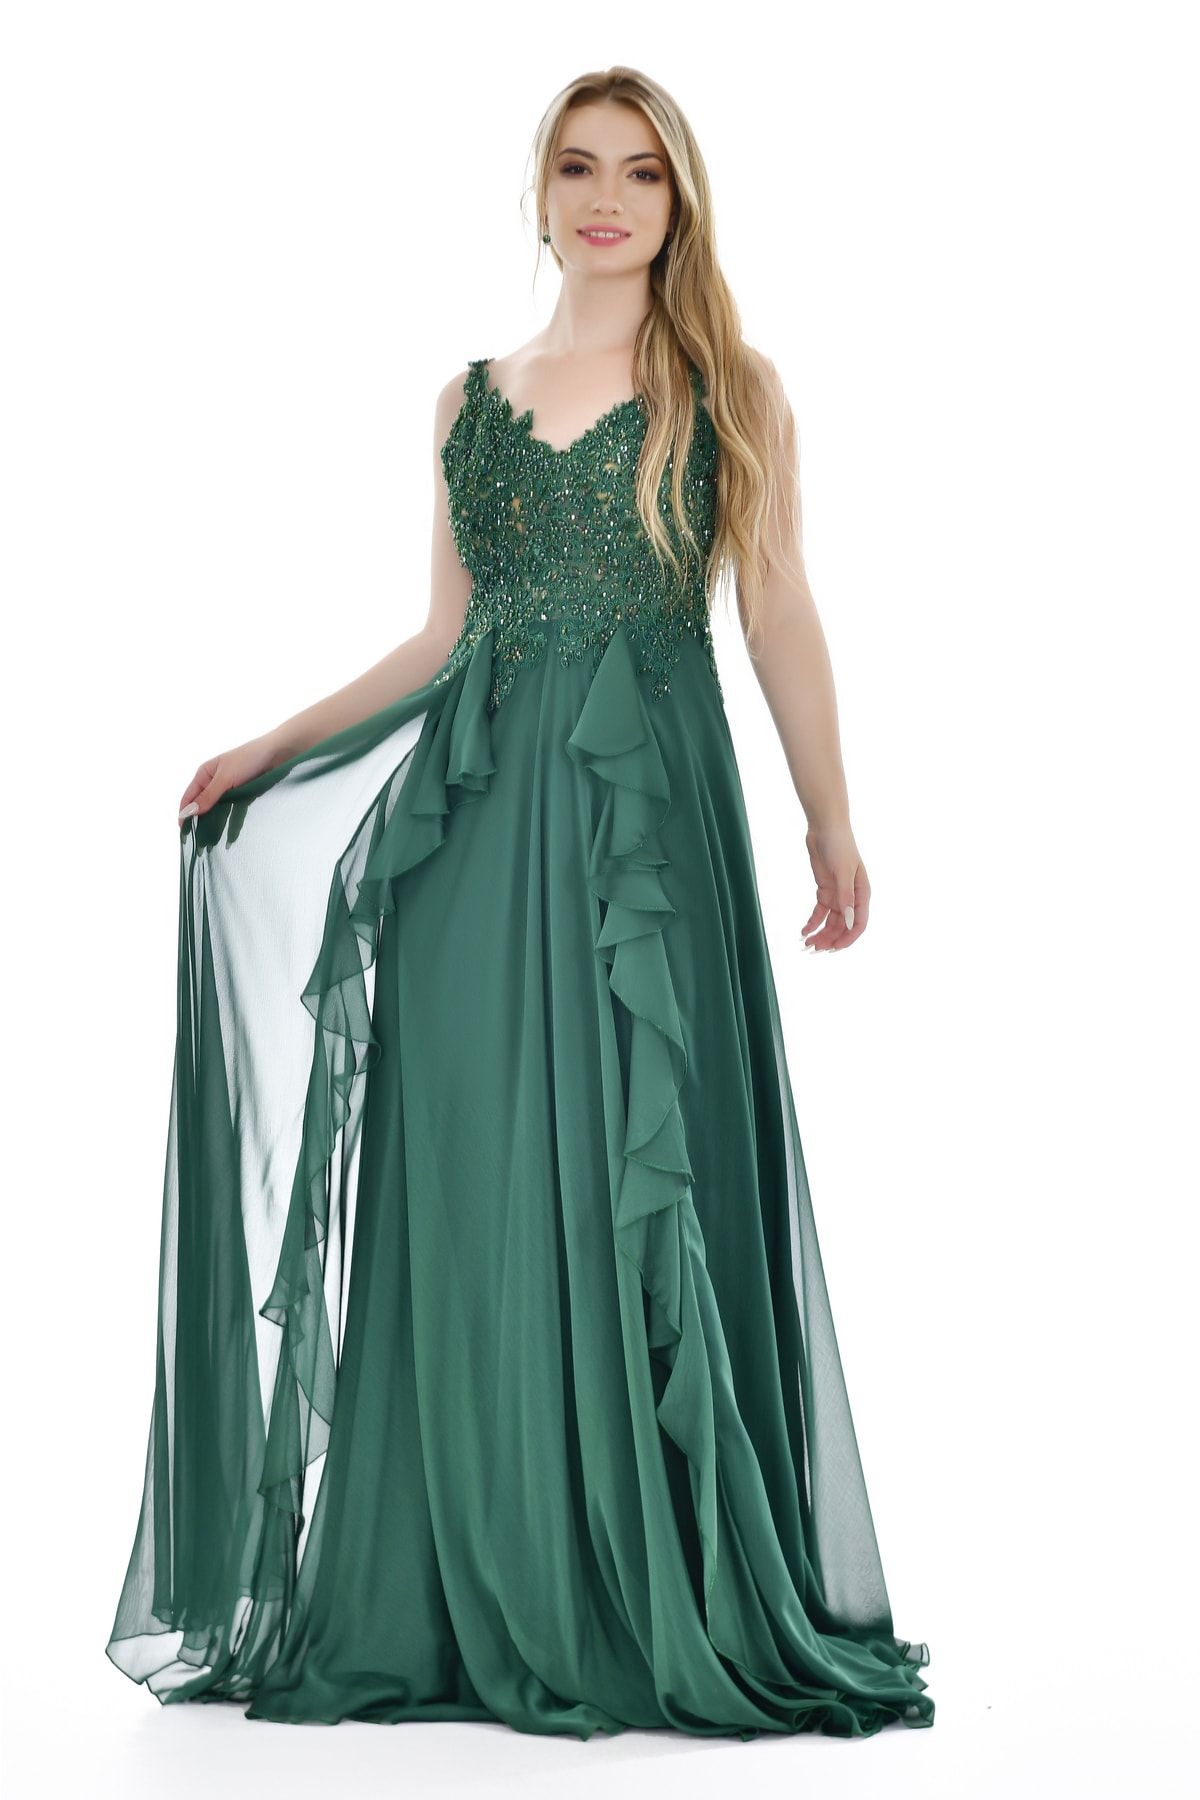 Kulis Zümrüt Yeşili Askılı V Yaka Taşlı Volanlı Fransız Şifon Abiye & Mezuniyet Elbisesi